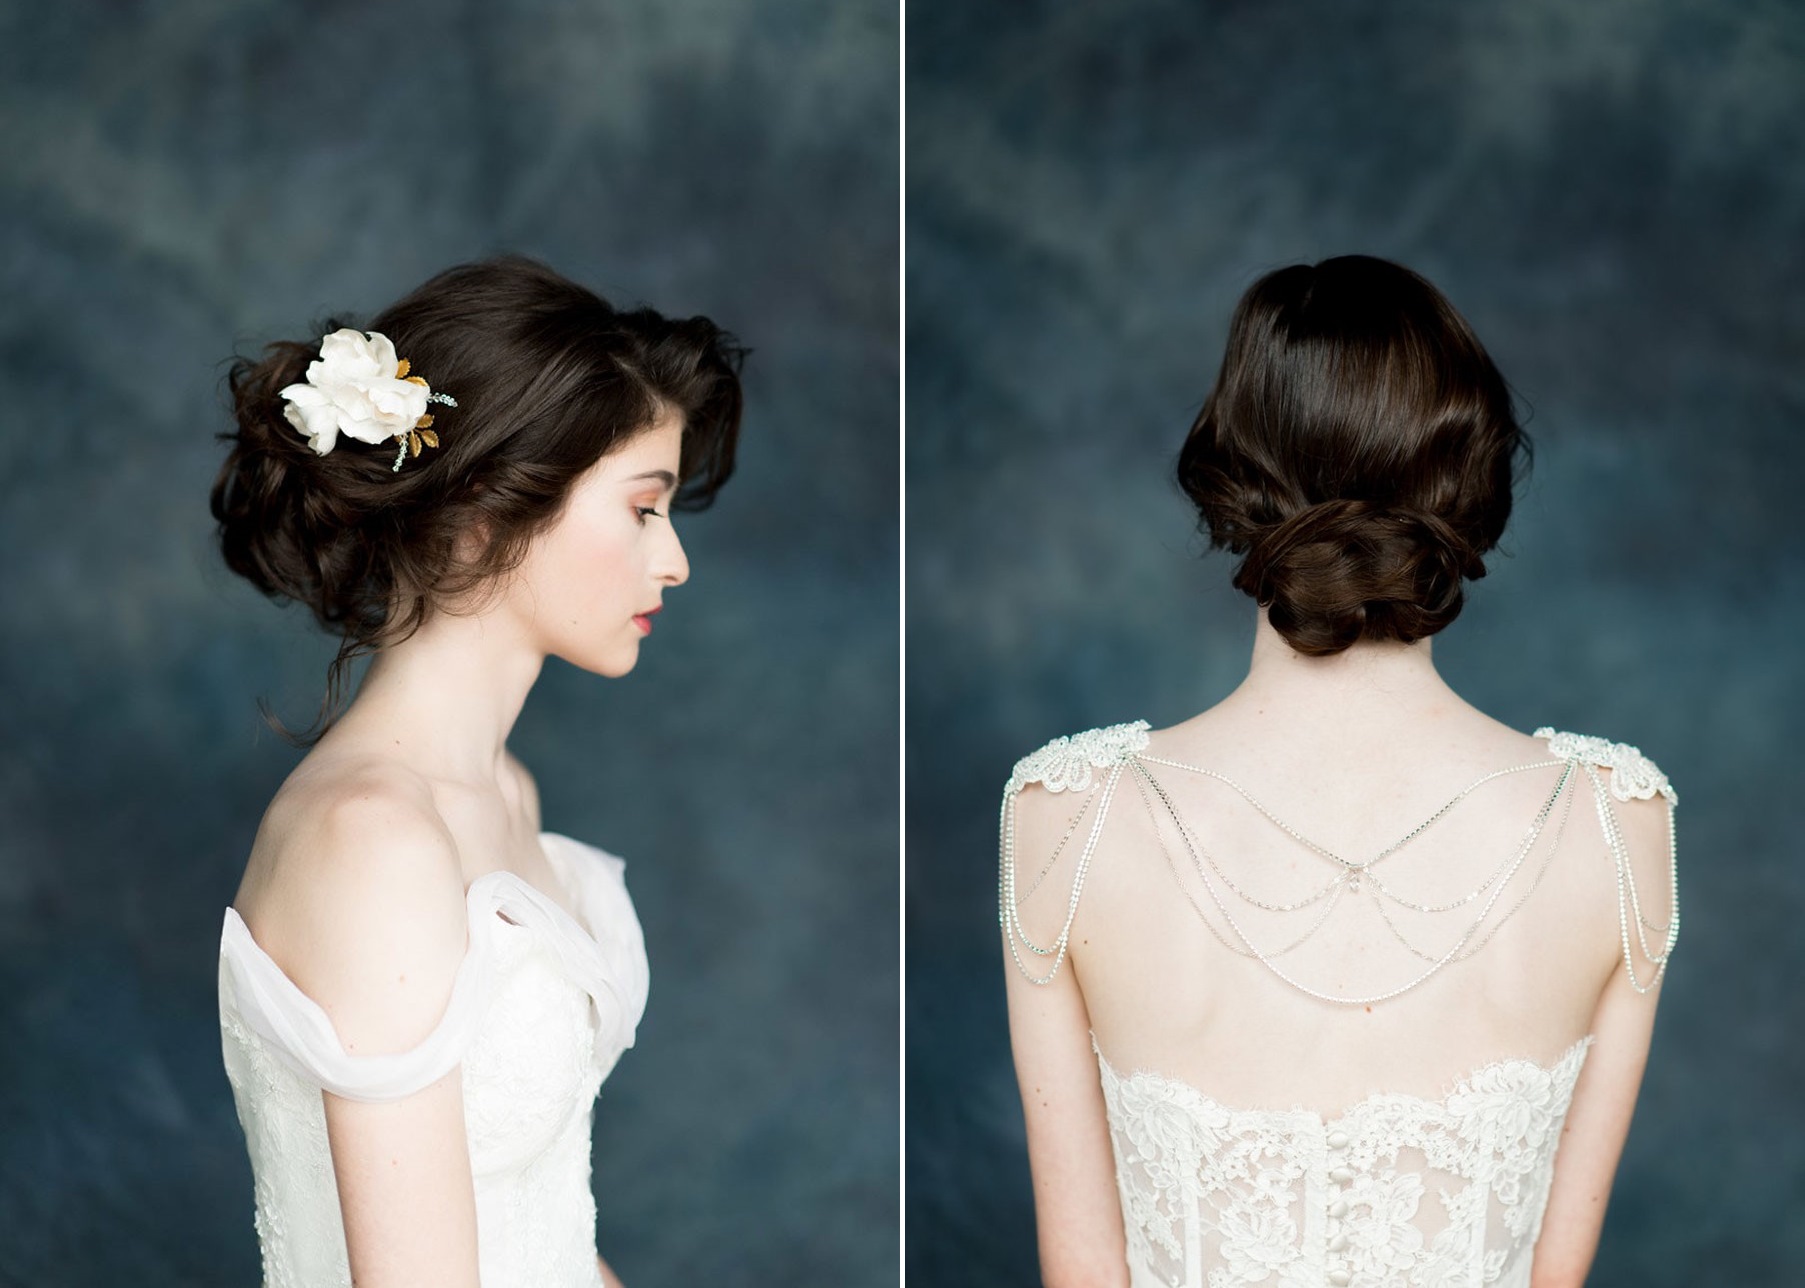 Fawn & Flora Bridal Hair Adornments from Blair Nadeau